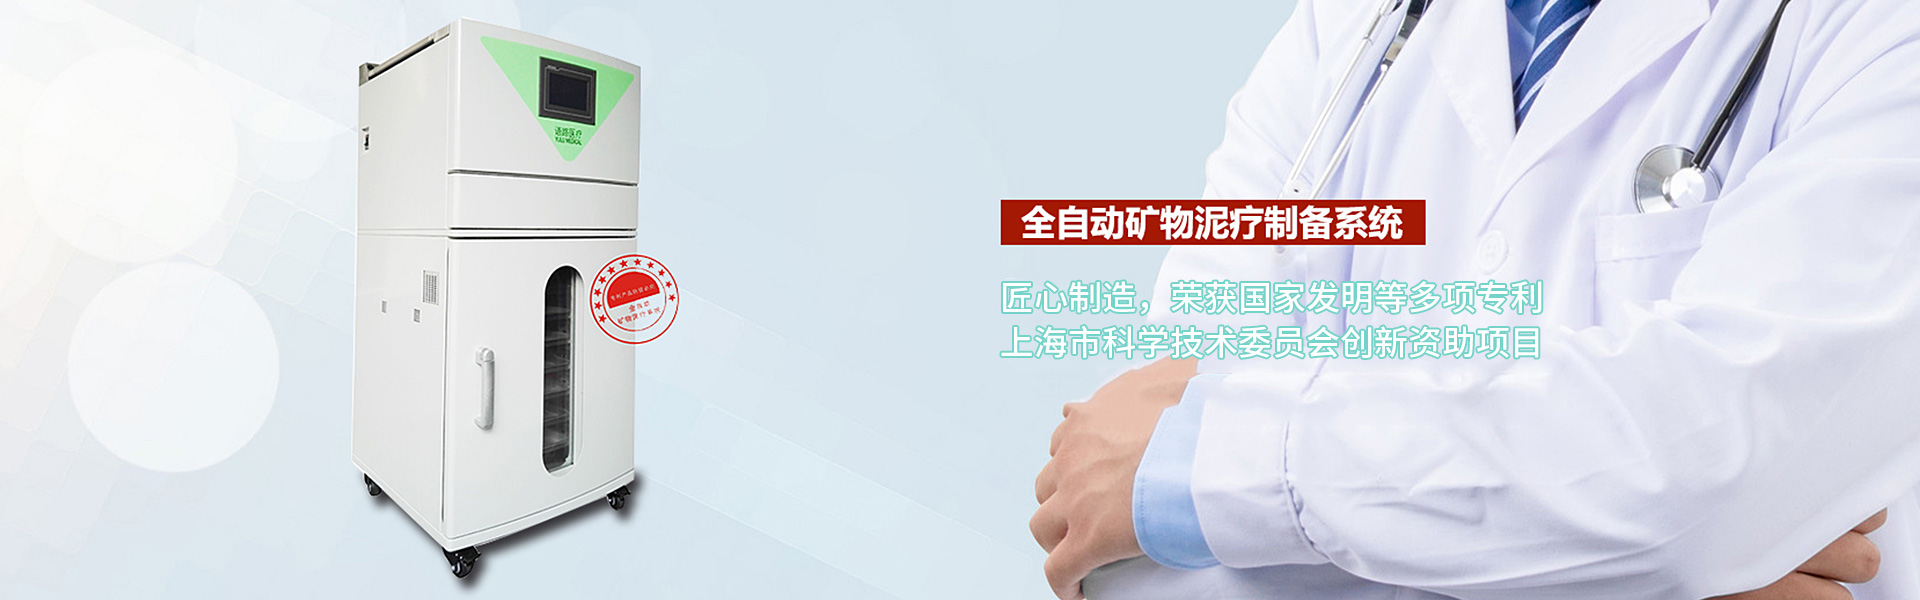 上海語路醫療科技有限公司